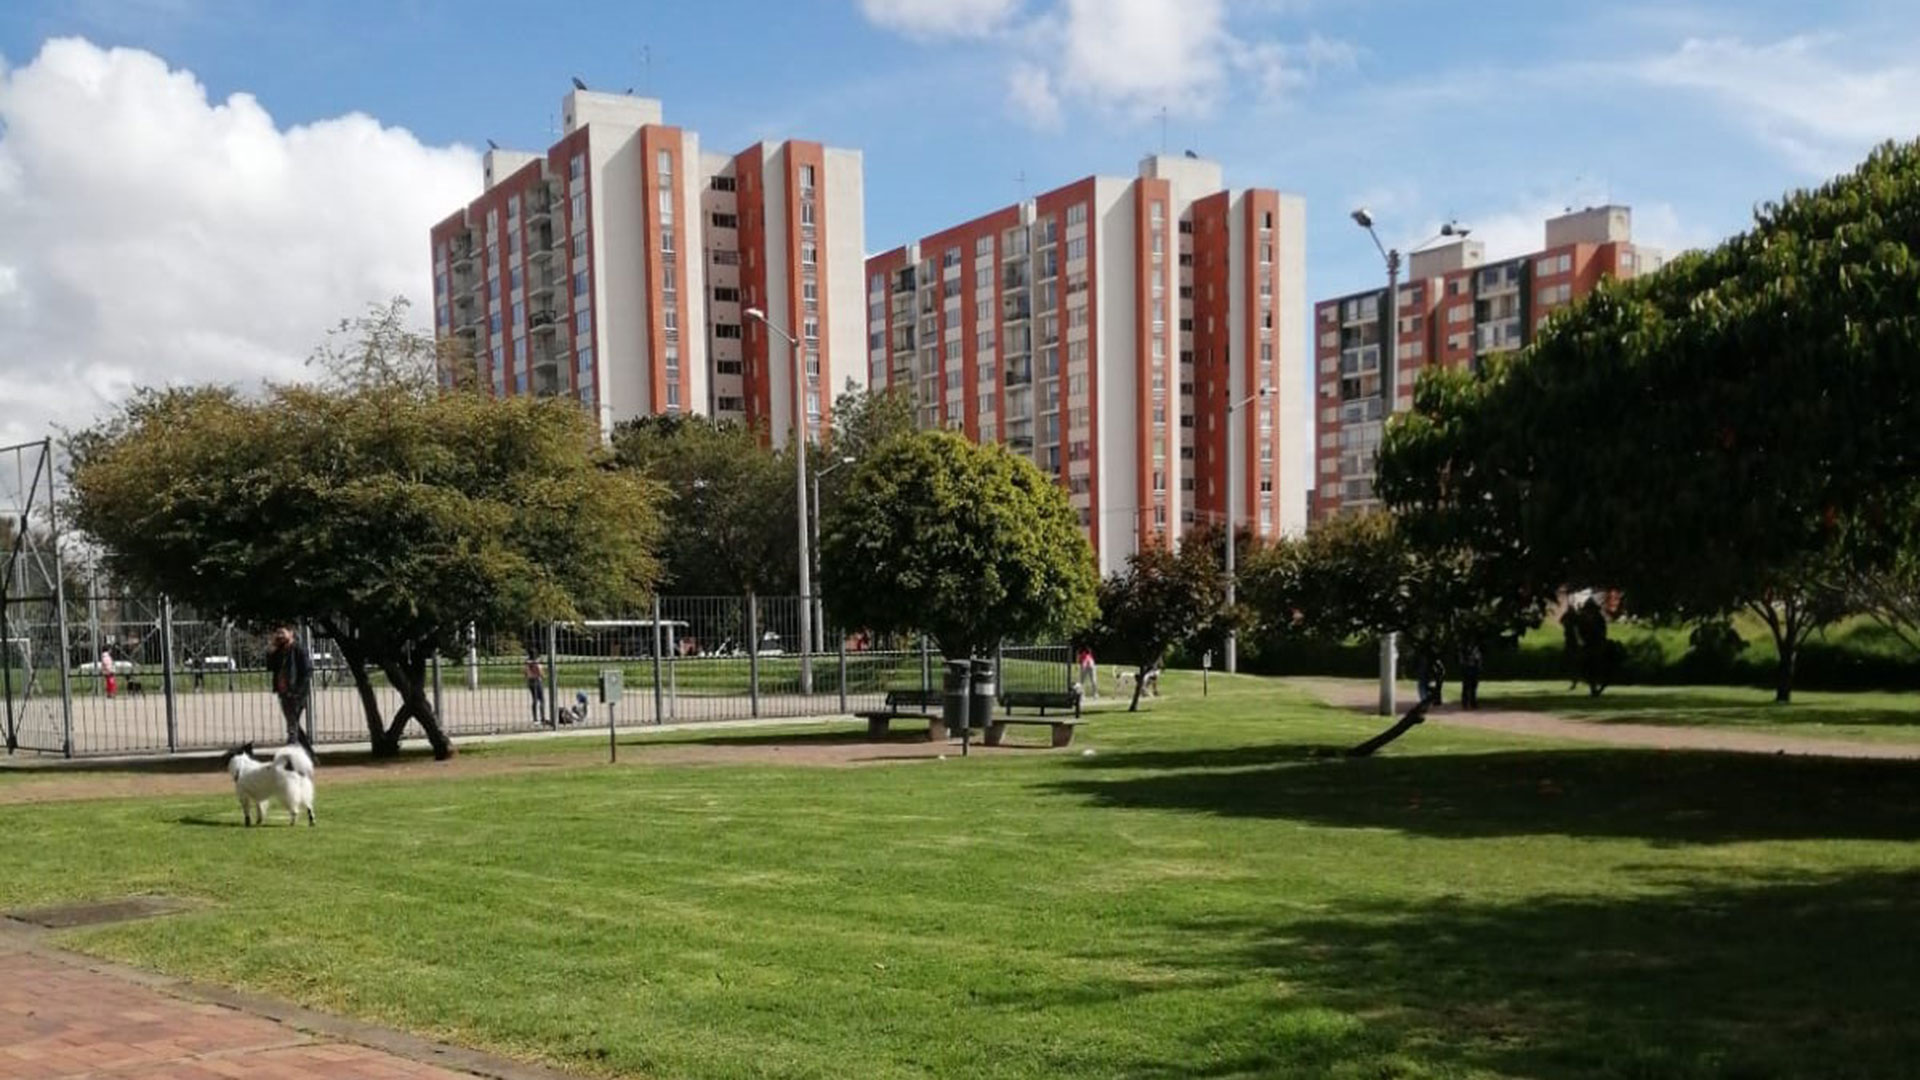 Edificios que poseen departamentos de 2, 3 y 4 ambientes en Bogotá, la capital de Colombia. La mayoría están cerca de áreas verdes, sectores de juegos e instalaciones deportivas (Foto Gentileza: Héctor Zapata)